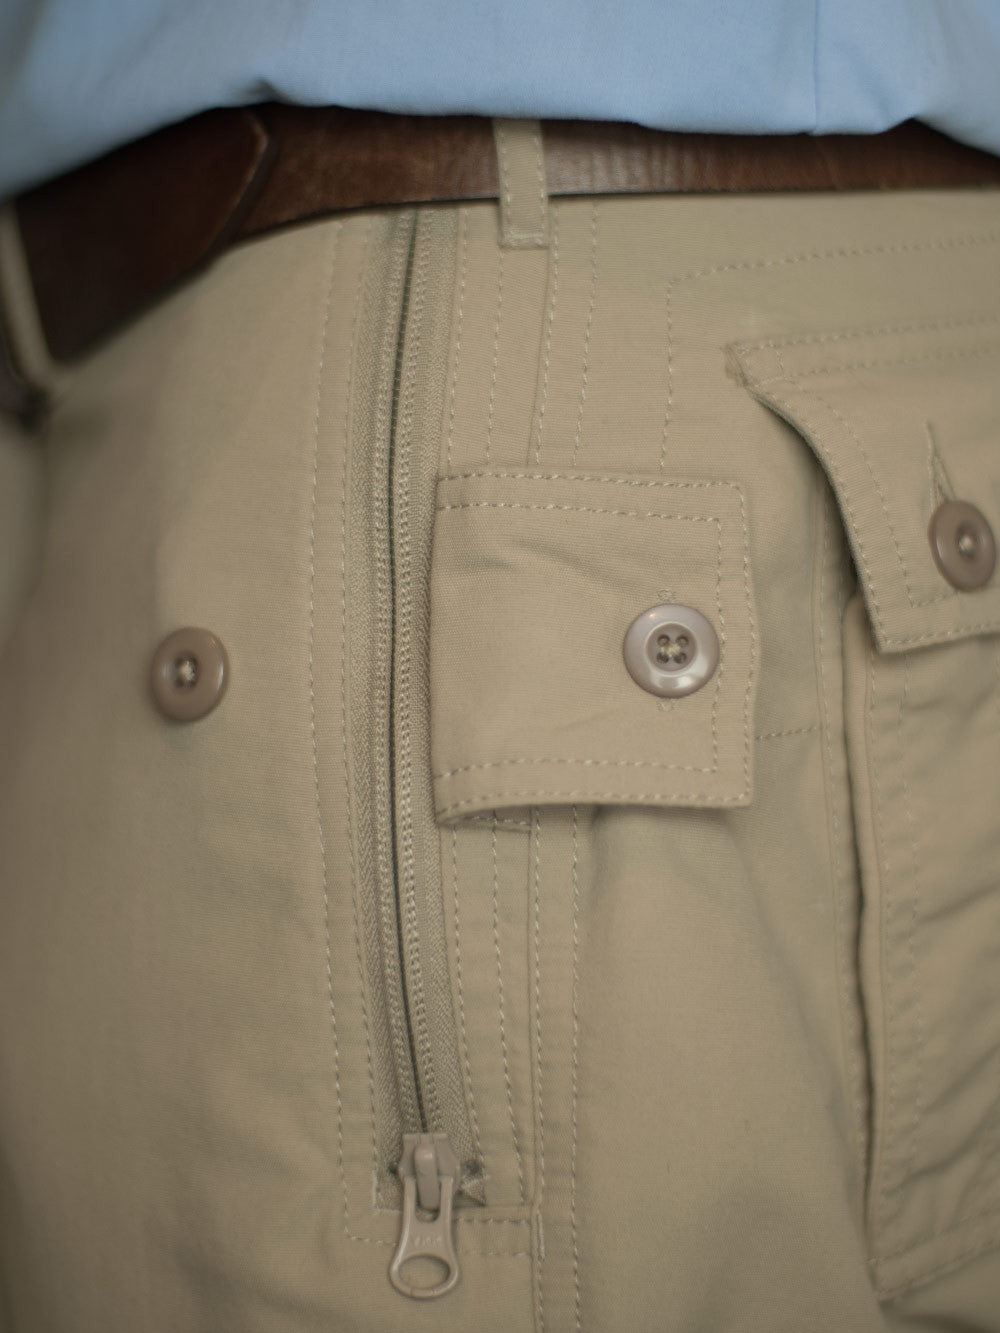 Safe & Stylish Pickpocket Proof Clothing for Travel